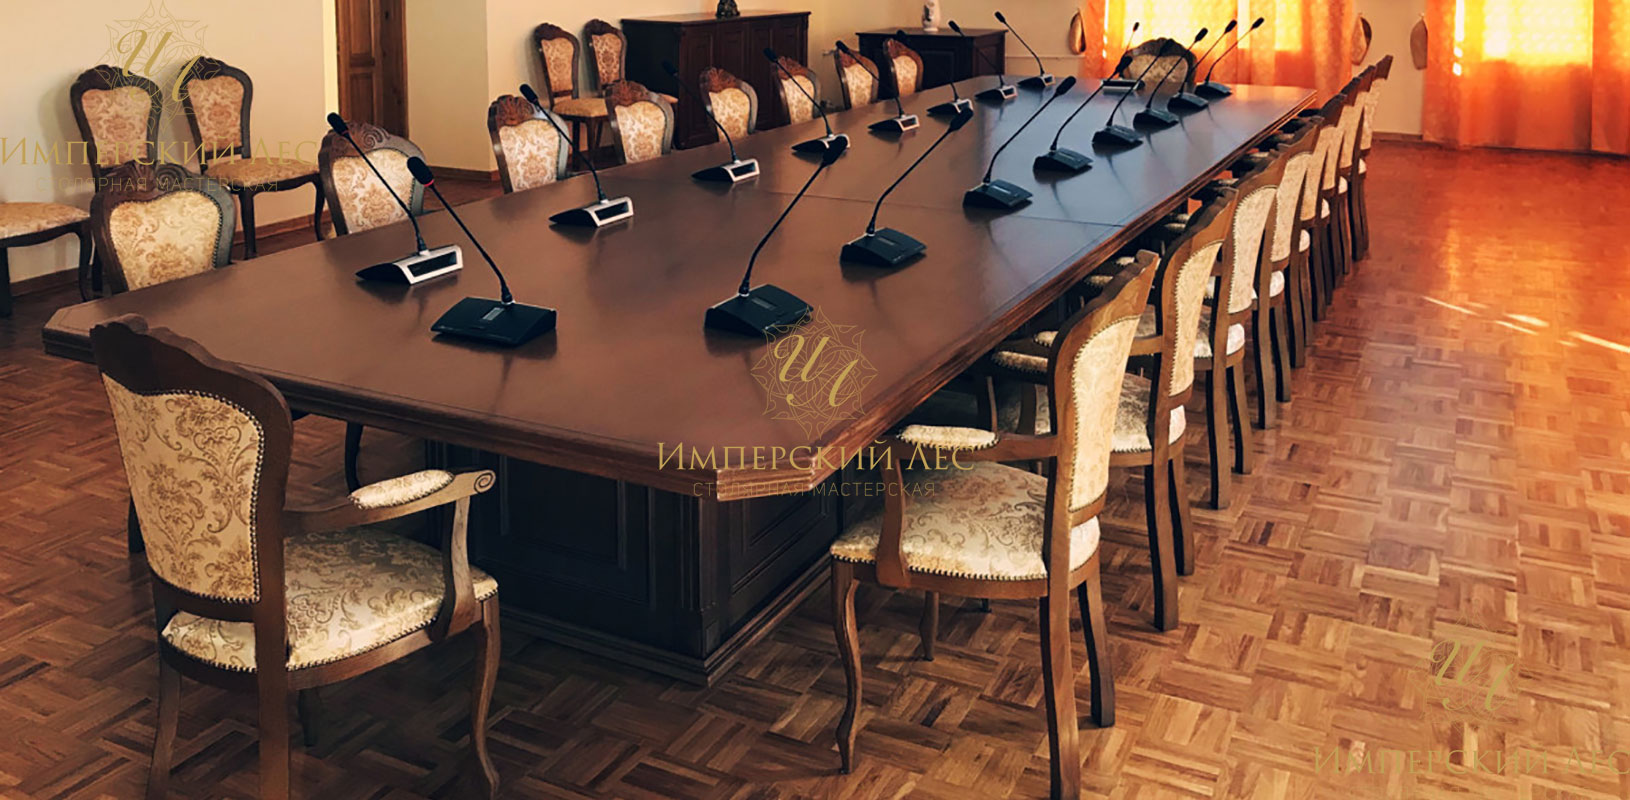 Столы "Grand office" для проведения переговоров